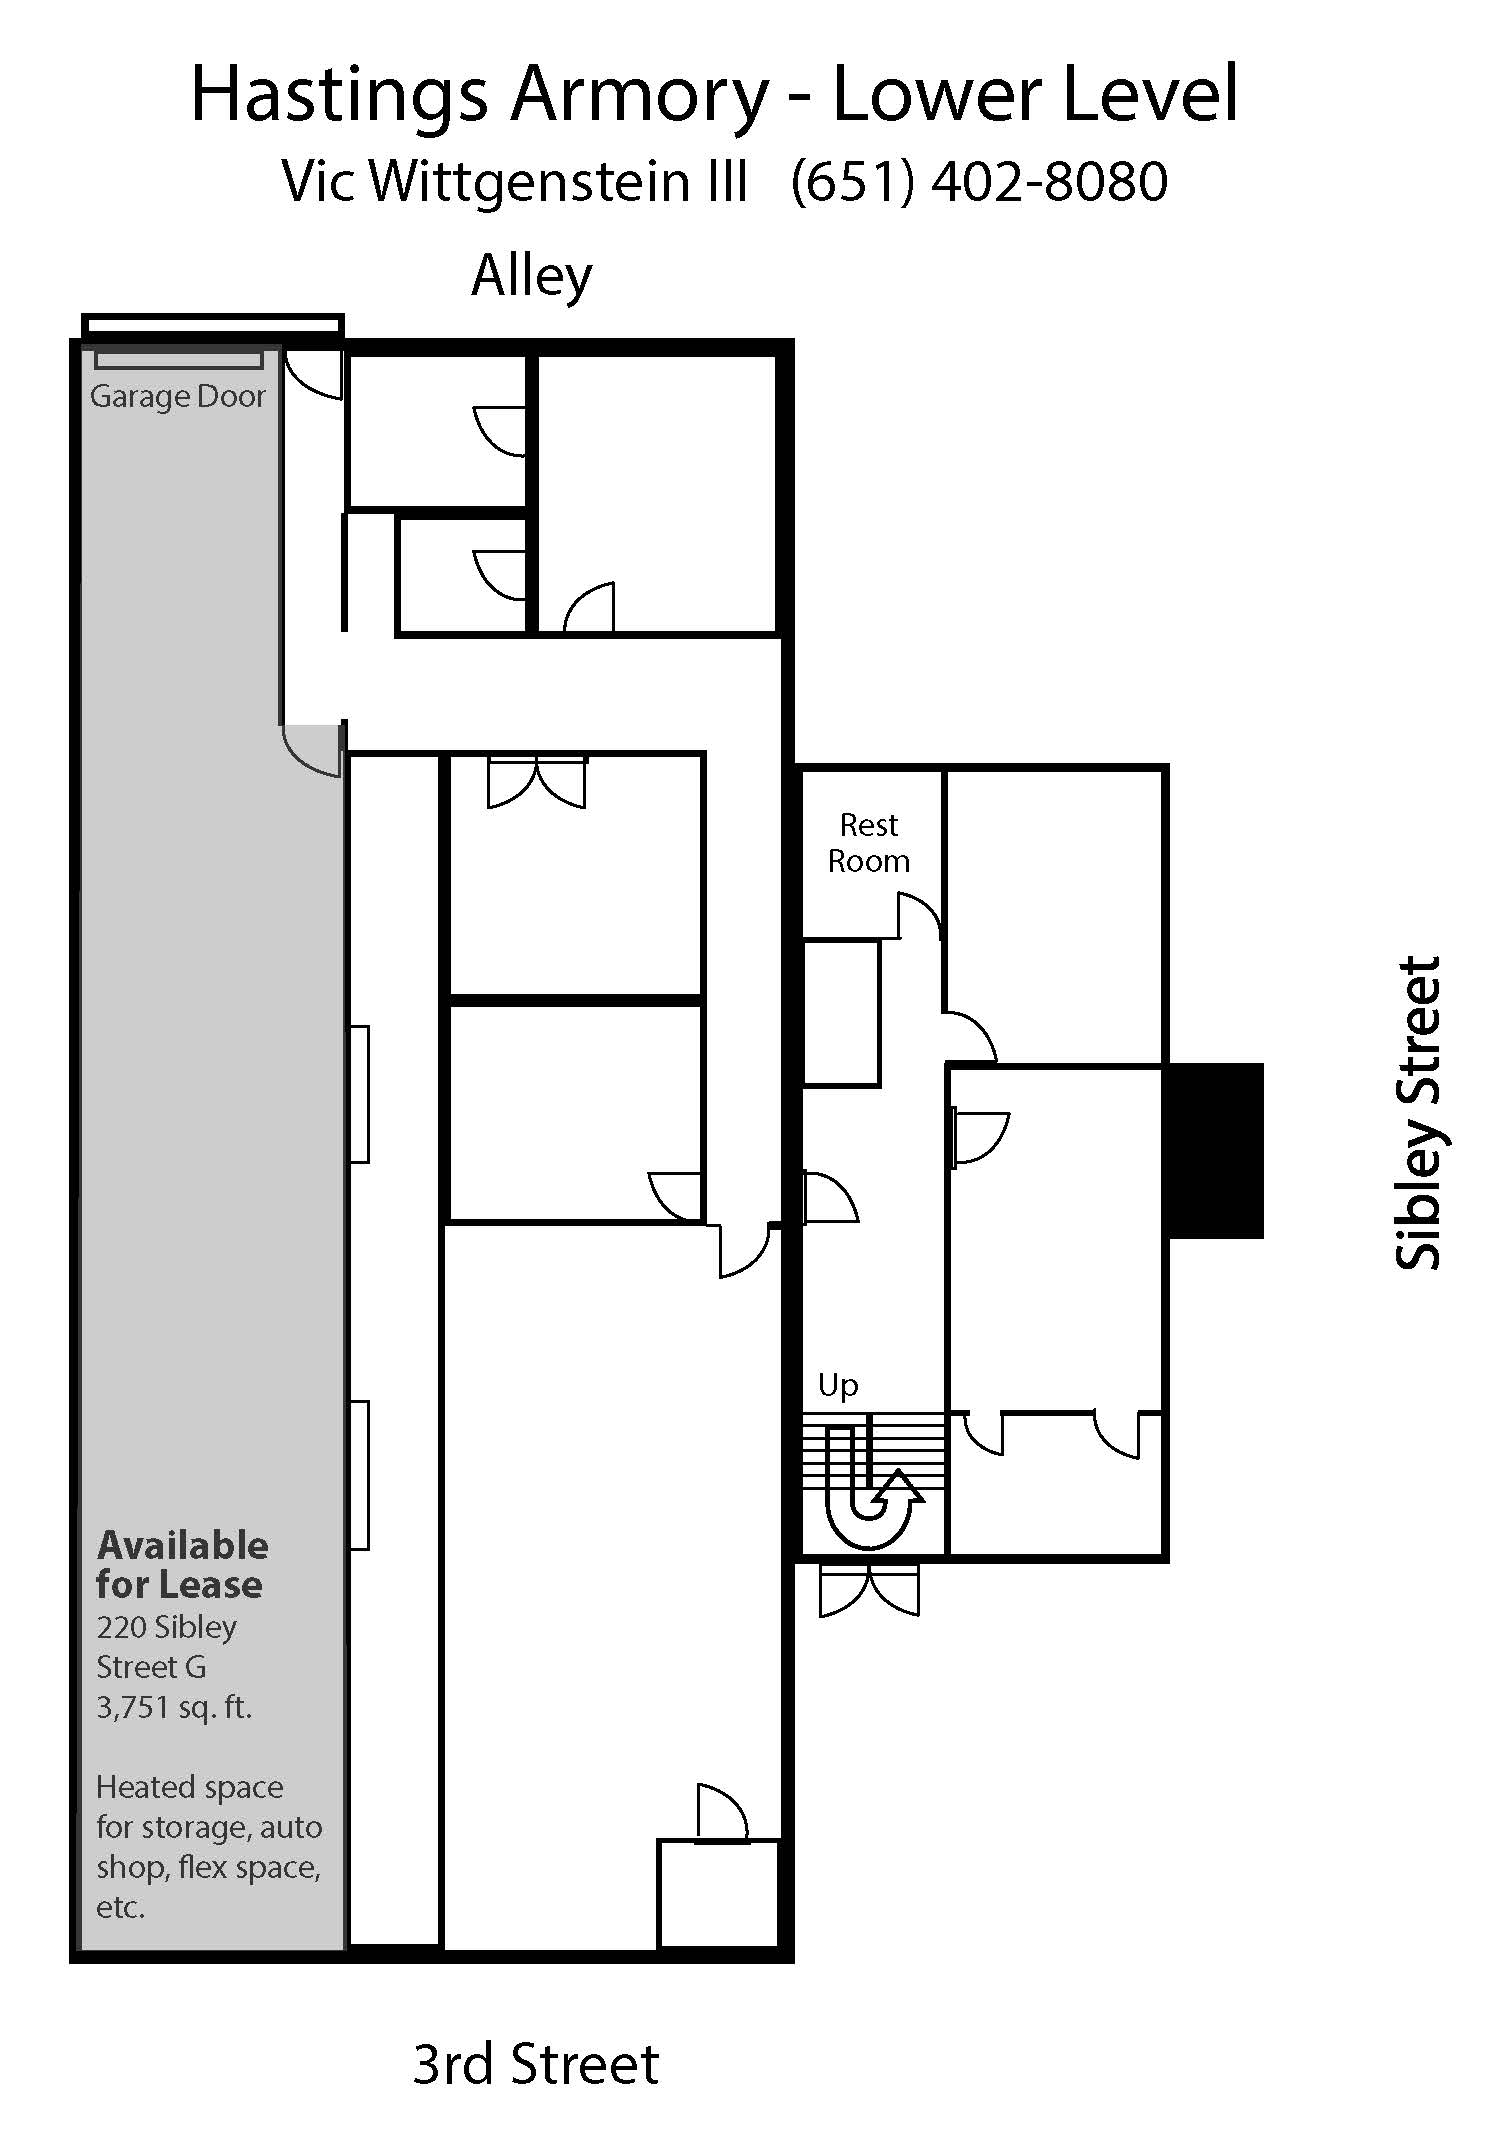 Lower Level Floor Plan - G